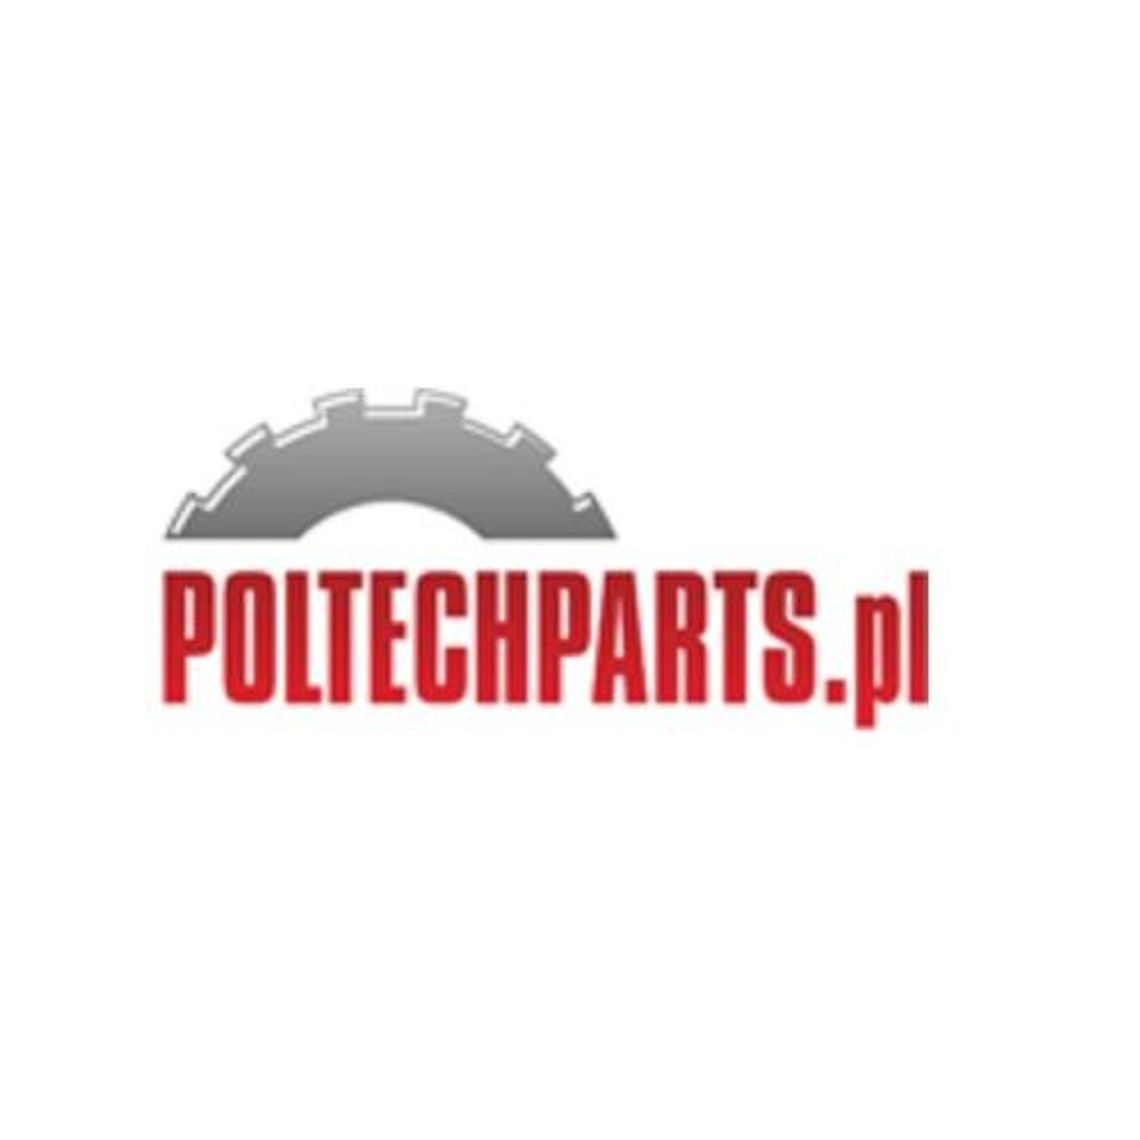 Poltechparts.pl - części do maszyn rolniczych, ciągników i kombajnów